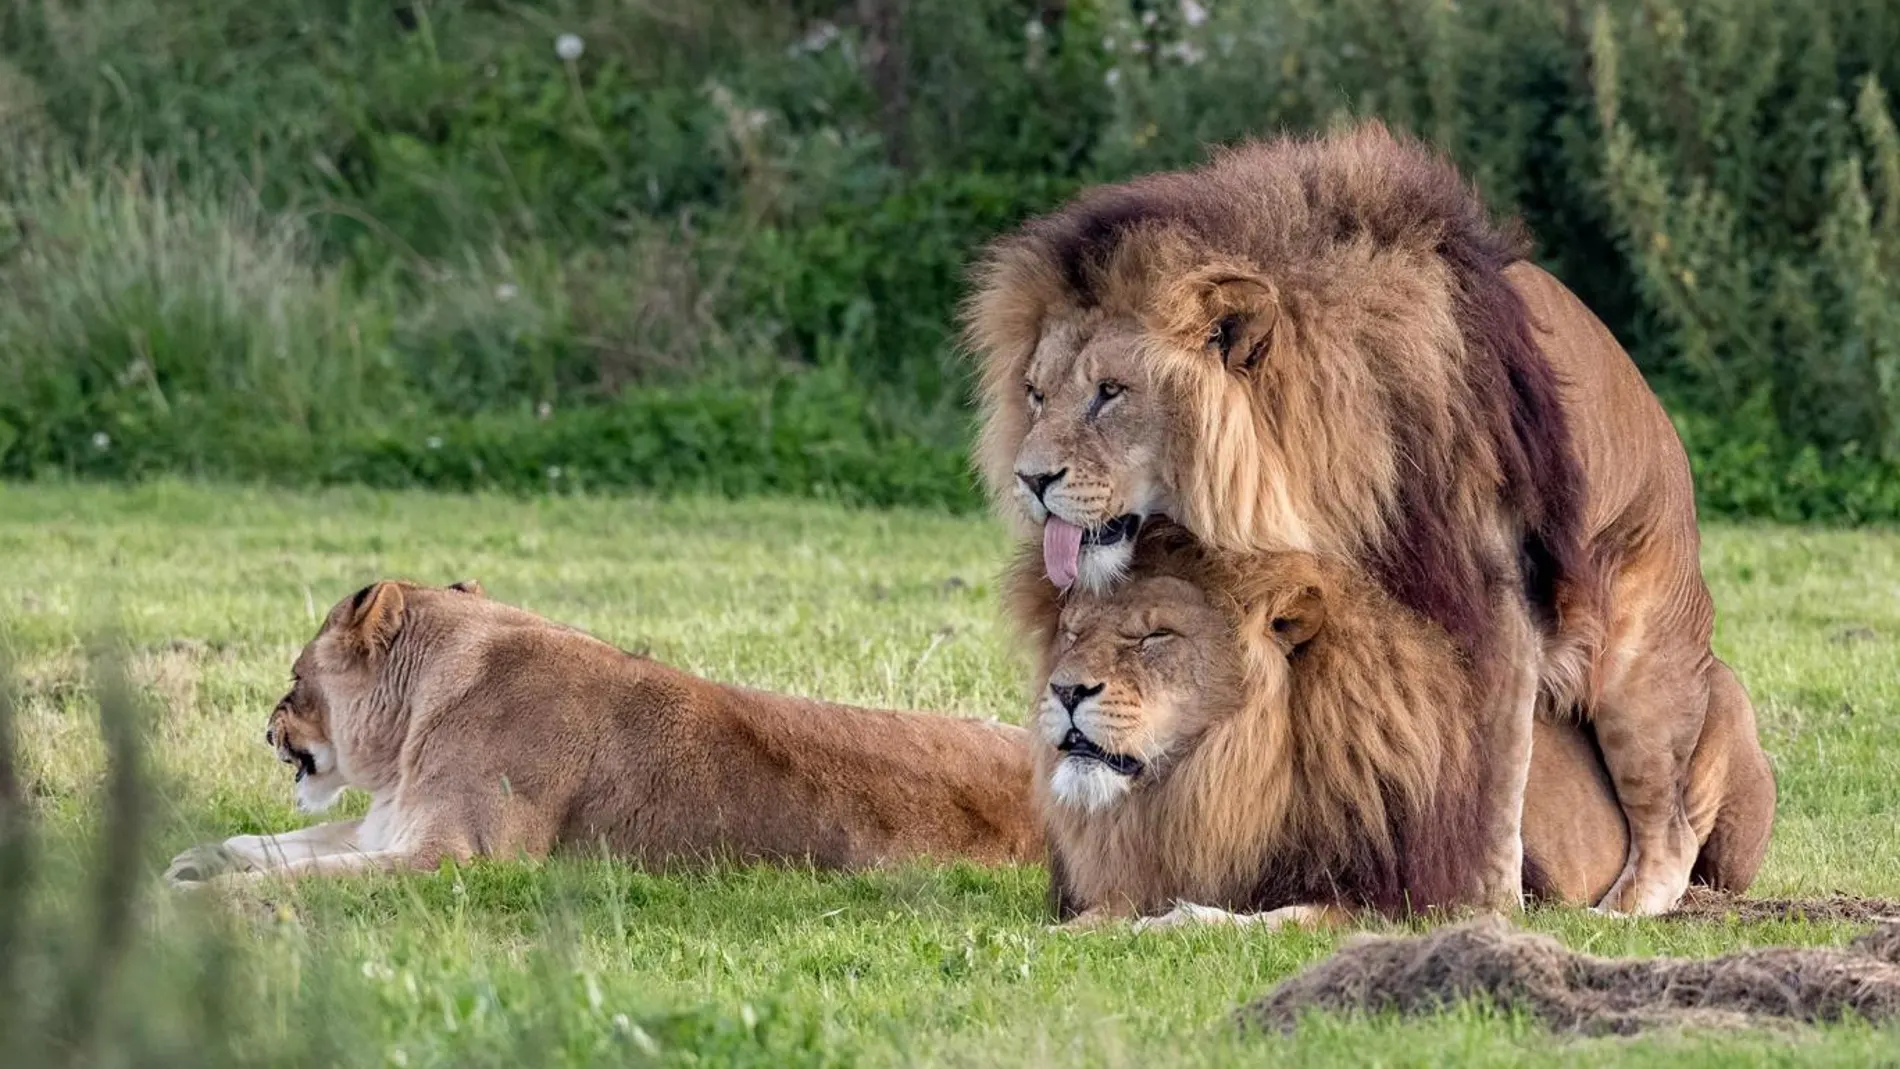 Dos leones practicando sexo, prueba de que la homosexualidad es algo  natural -también- entre animales